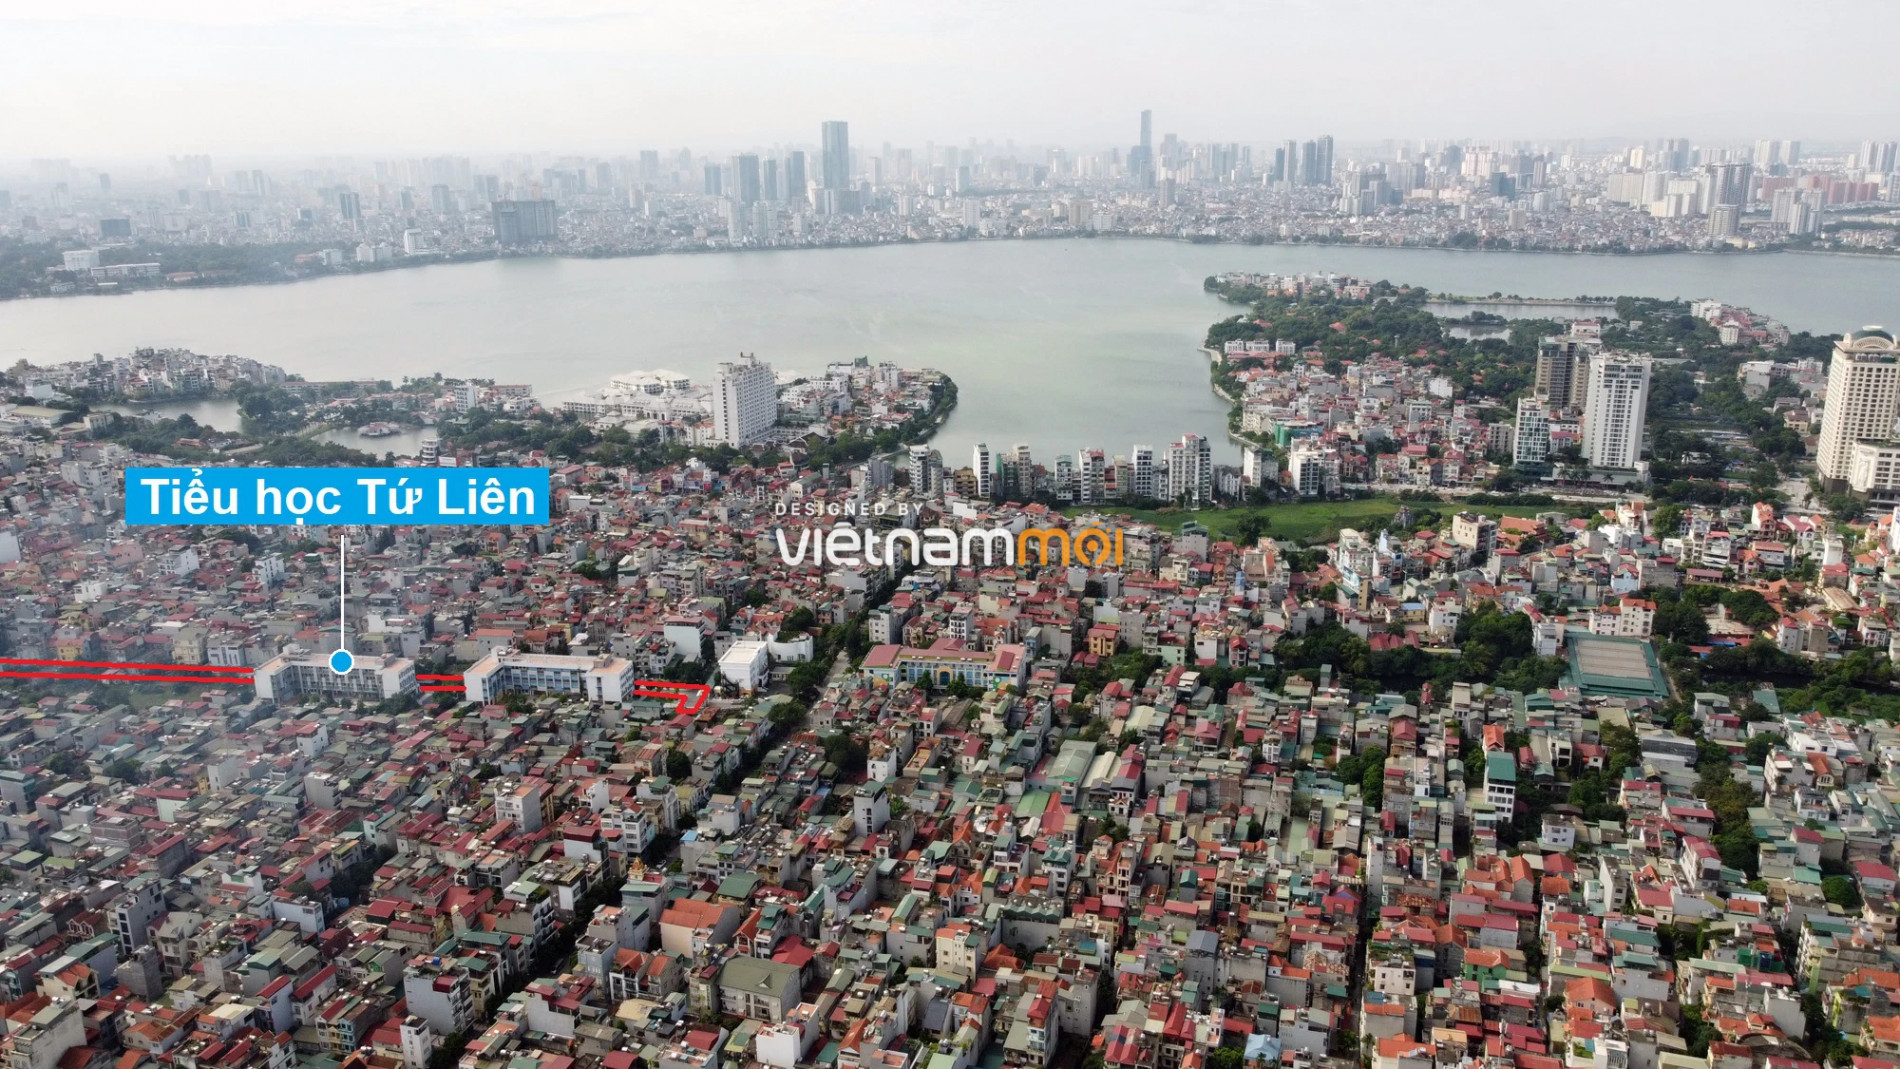 Những khu đất sắp thu hồi để mở đường ở quận Tây Hồ, Hà Nội (phần 6) - Ảnh 16.